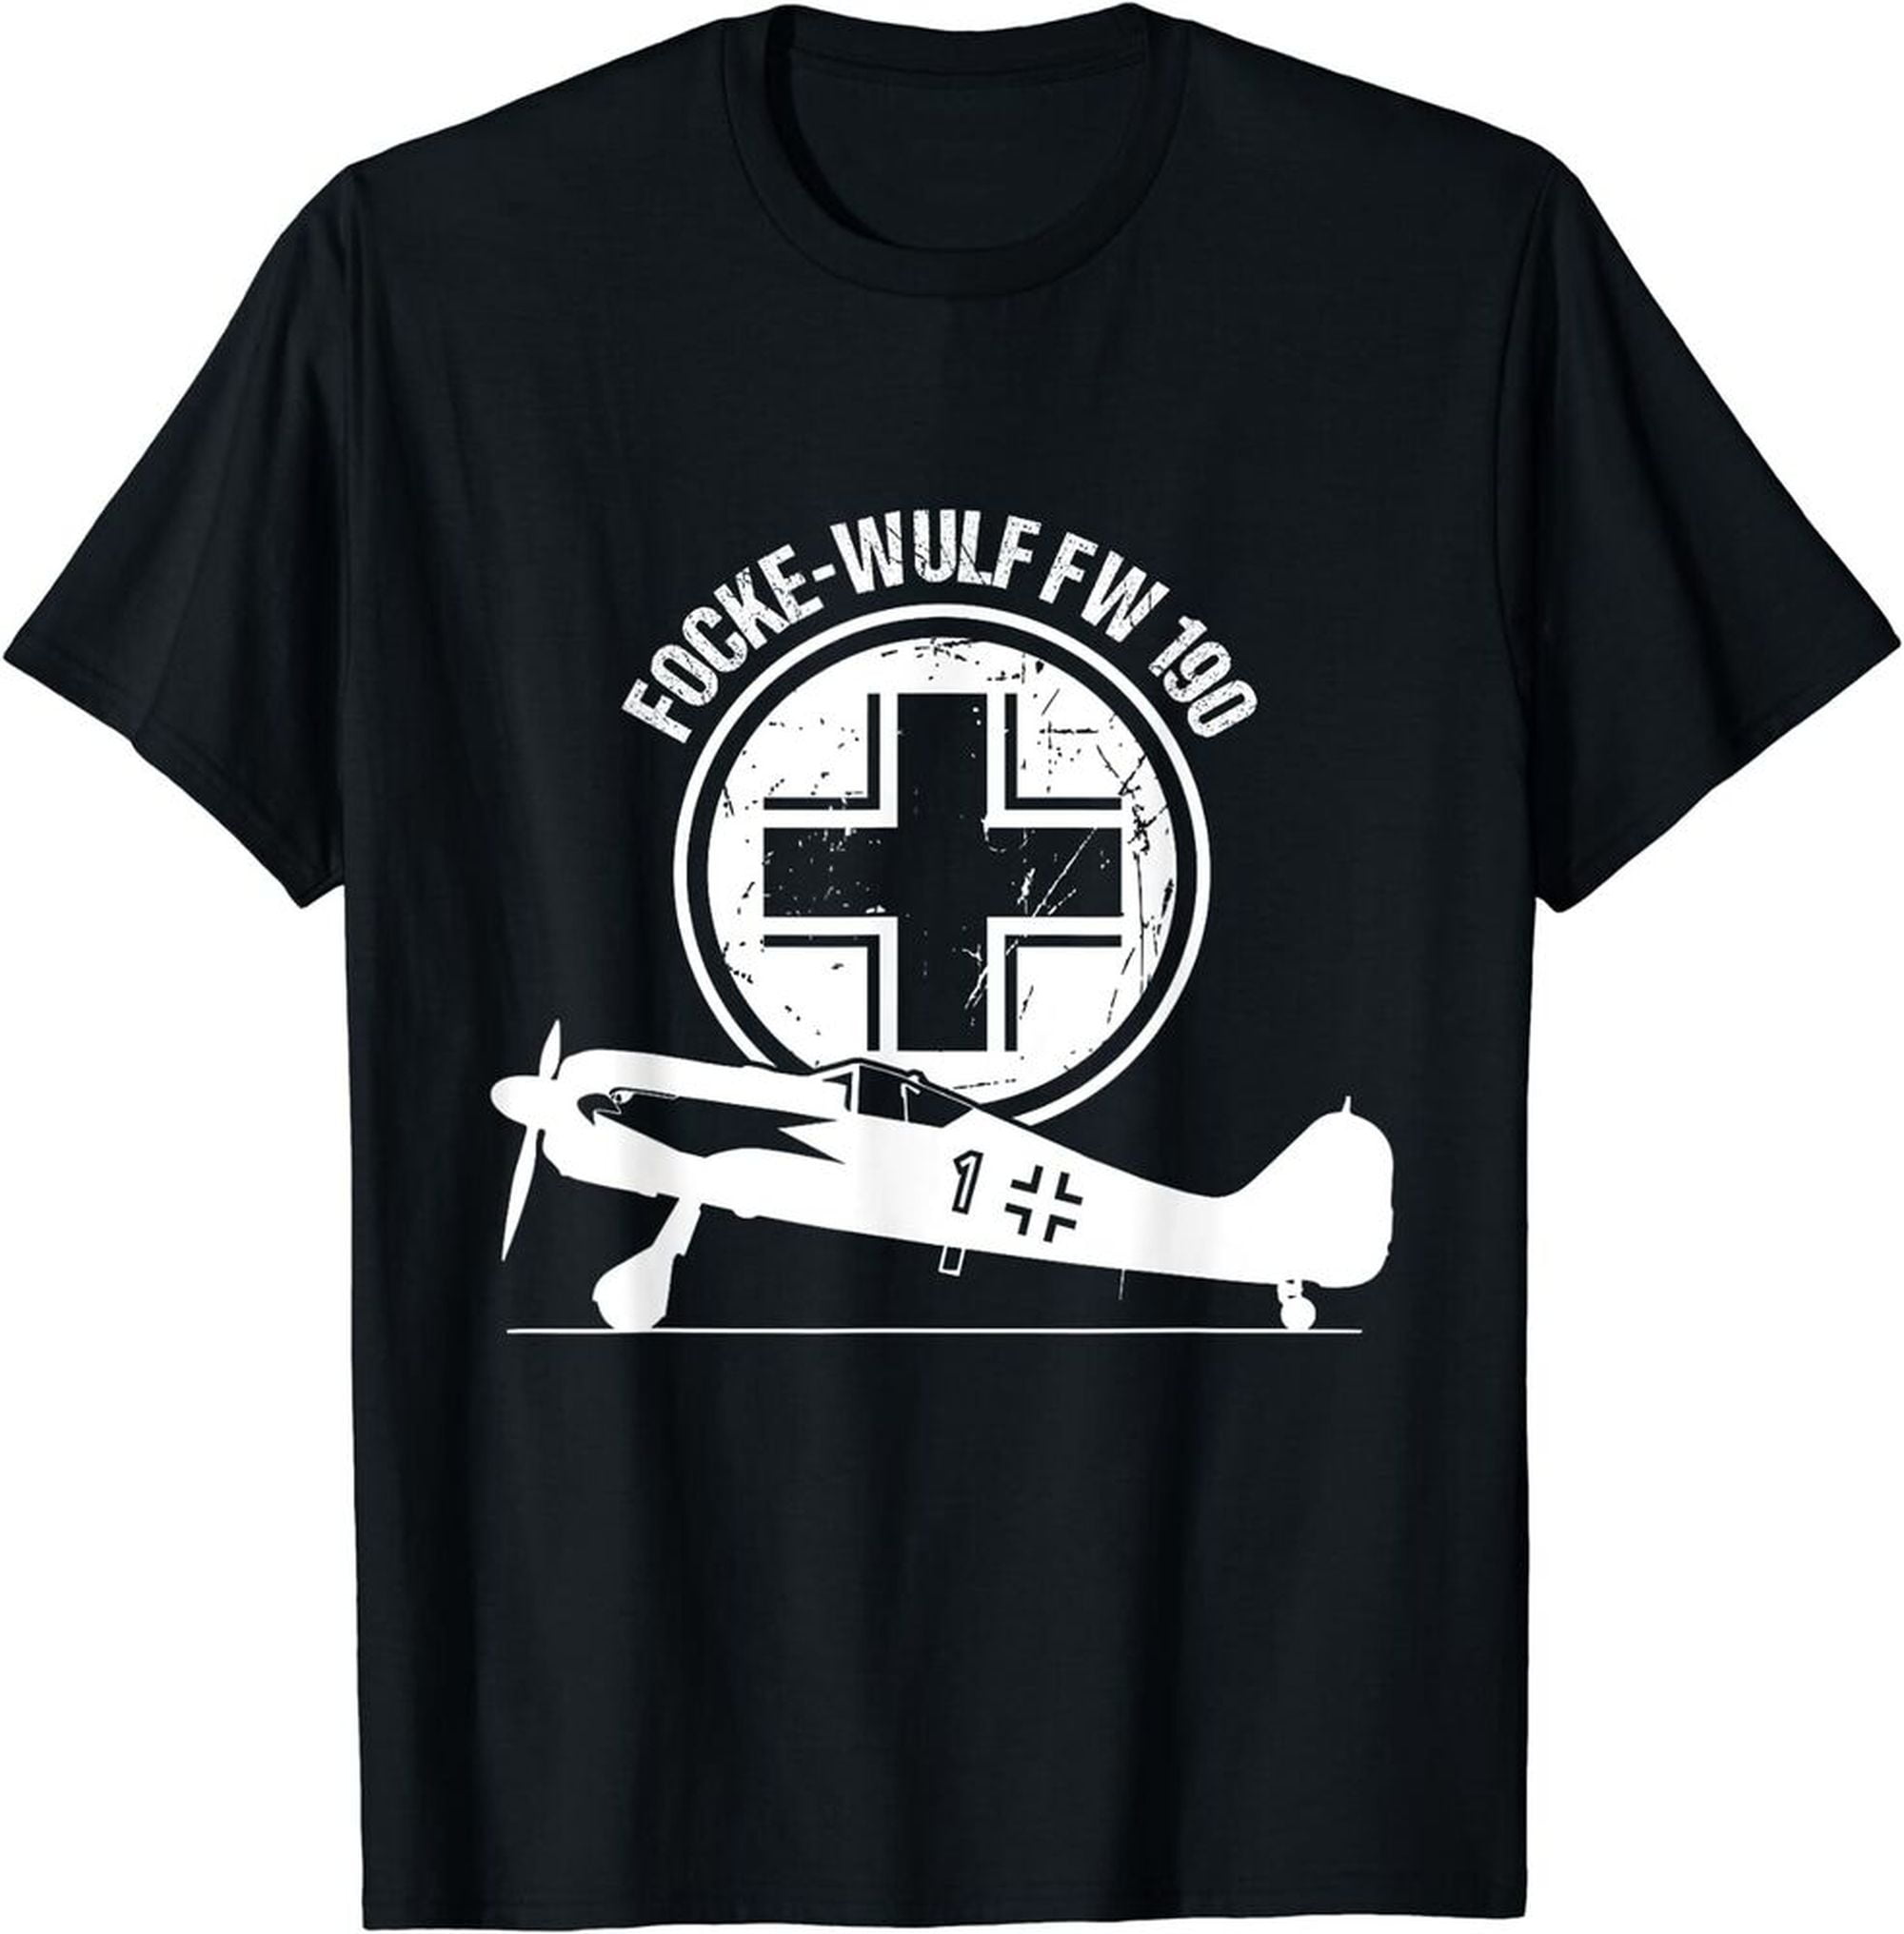 Focke Wulf FW 190 Luftwaffe Warbird Fighter Aircraft Gift T-Shirt ...